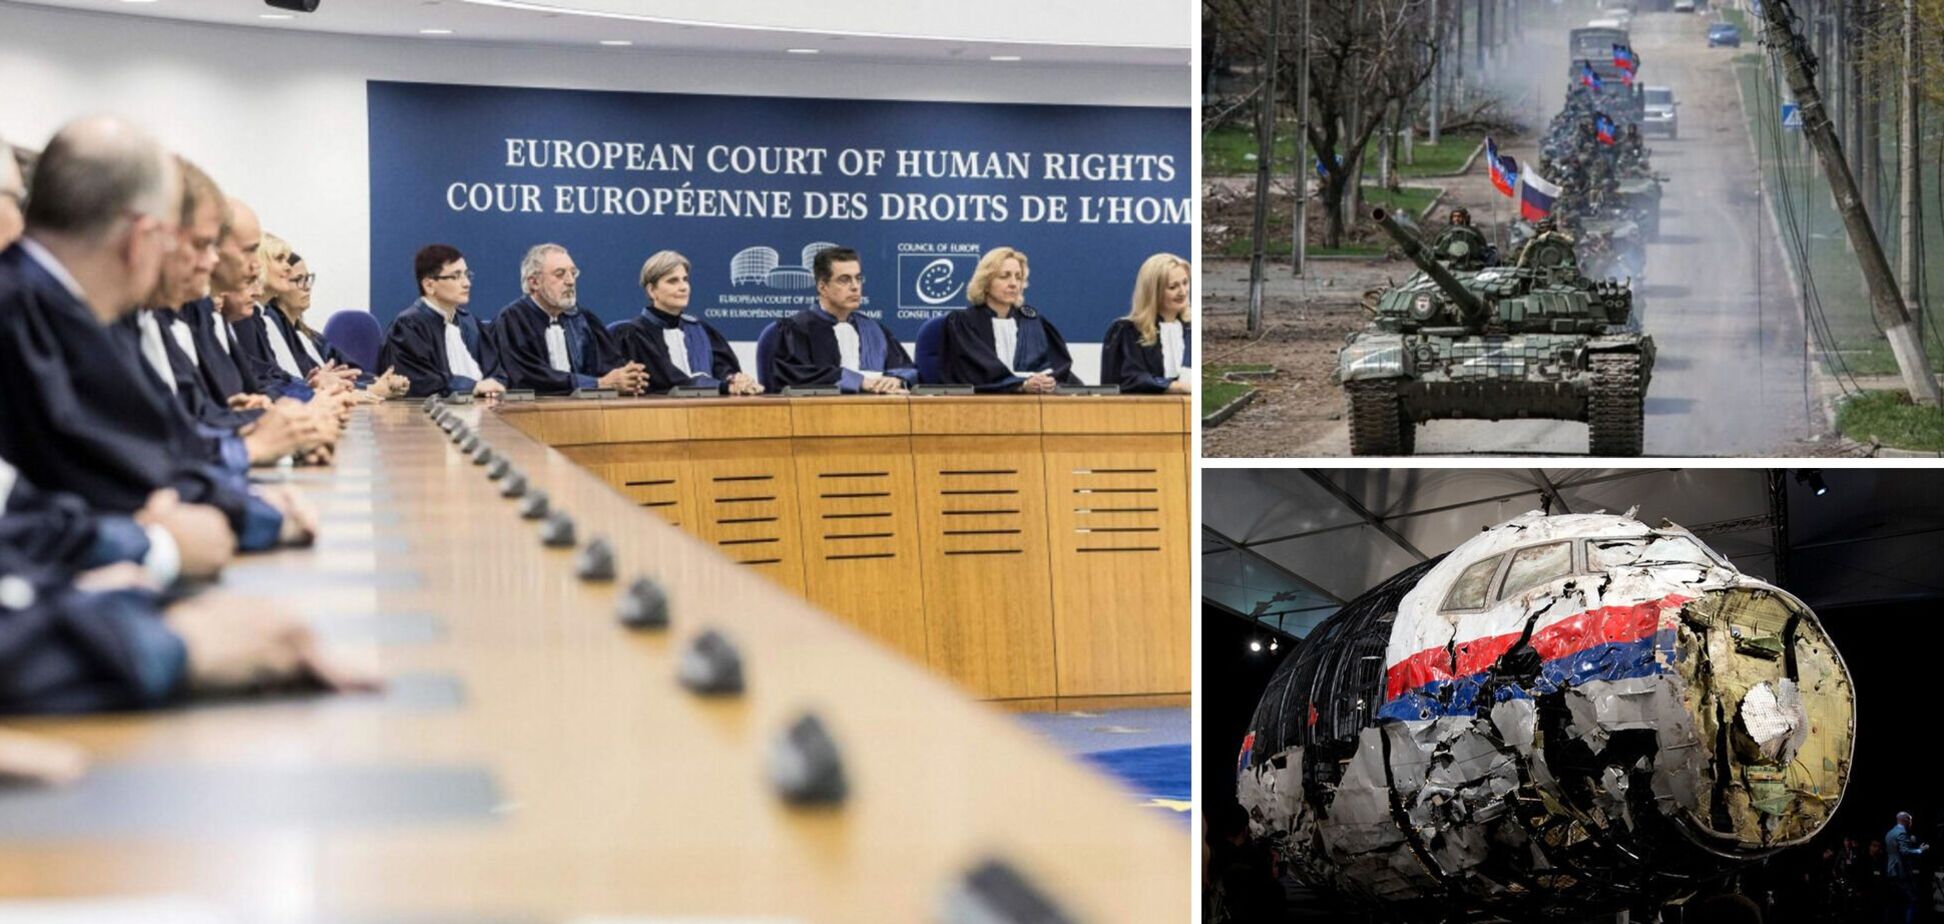 ЕСПЧ признал Россию ответчиком по делу об оккупации Донбасса в 2014 году, MH17 и поддержке сепаратистов